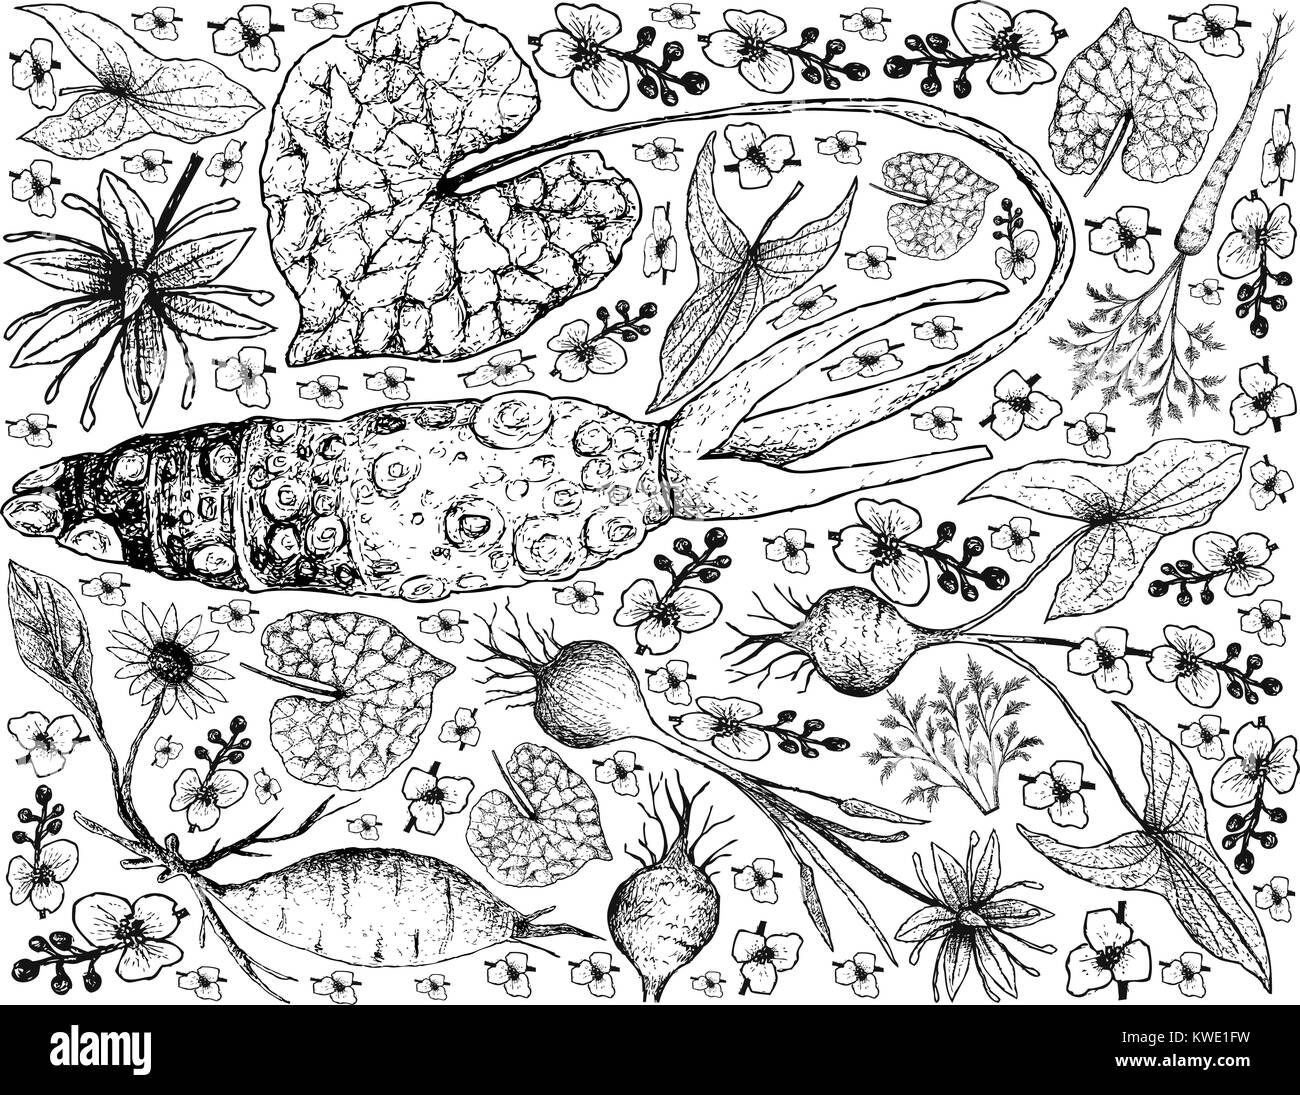 Radici tuberose e verdure, lo sfondo dell'illustrazione di mano il bozzetto di Amburgo fresco Prezzemolo, Yacon, Wasabi, Camas e latifoglie piano Arrowhead Illustrazione Vettoriale